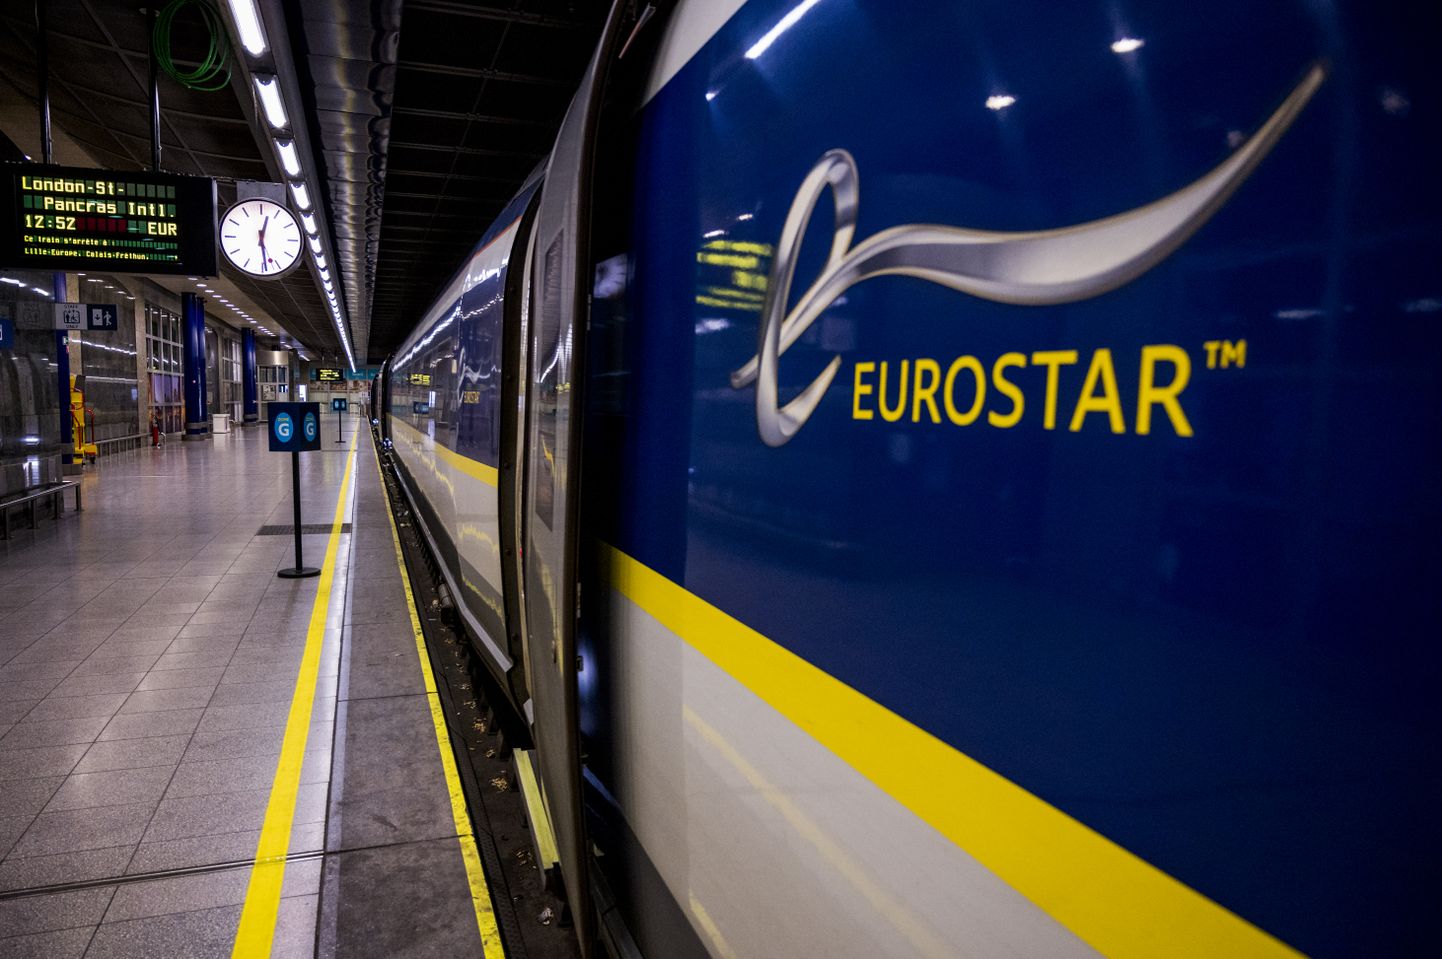 Eurostari esimene väljumine Brüsselist pärast Brexitit. Ettevõte on pankroti äärel, kuna Briti valitsus näeb seda Prantsuse firmana ja Prantsuse valitsus Briti firmana.